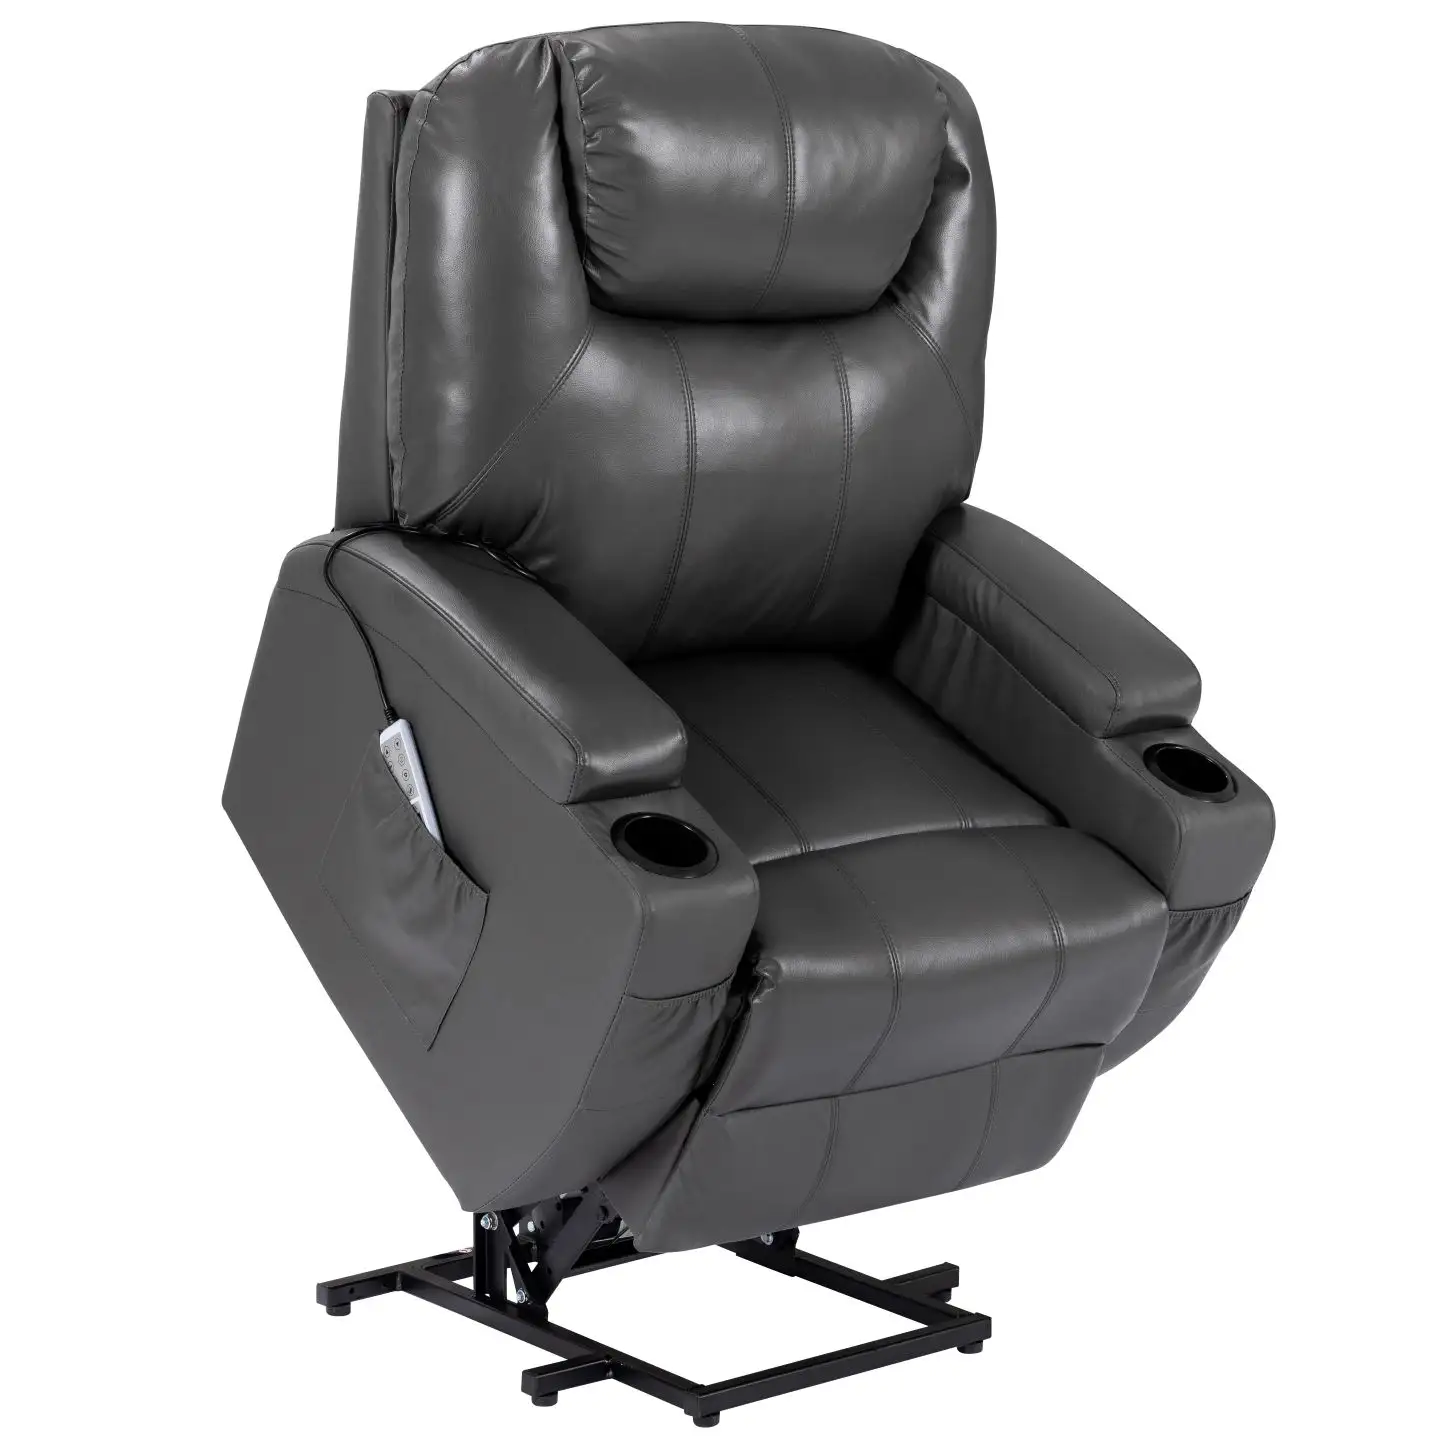 CY elektrikli kaldırma güç Recliner sandalye ısıtmalı masaj koltuğu salon uzaktan kumanda Modern Recliner kanepe sandalyeler